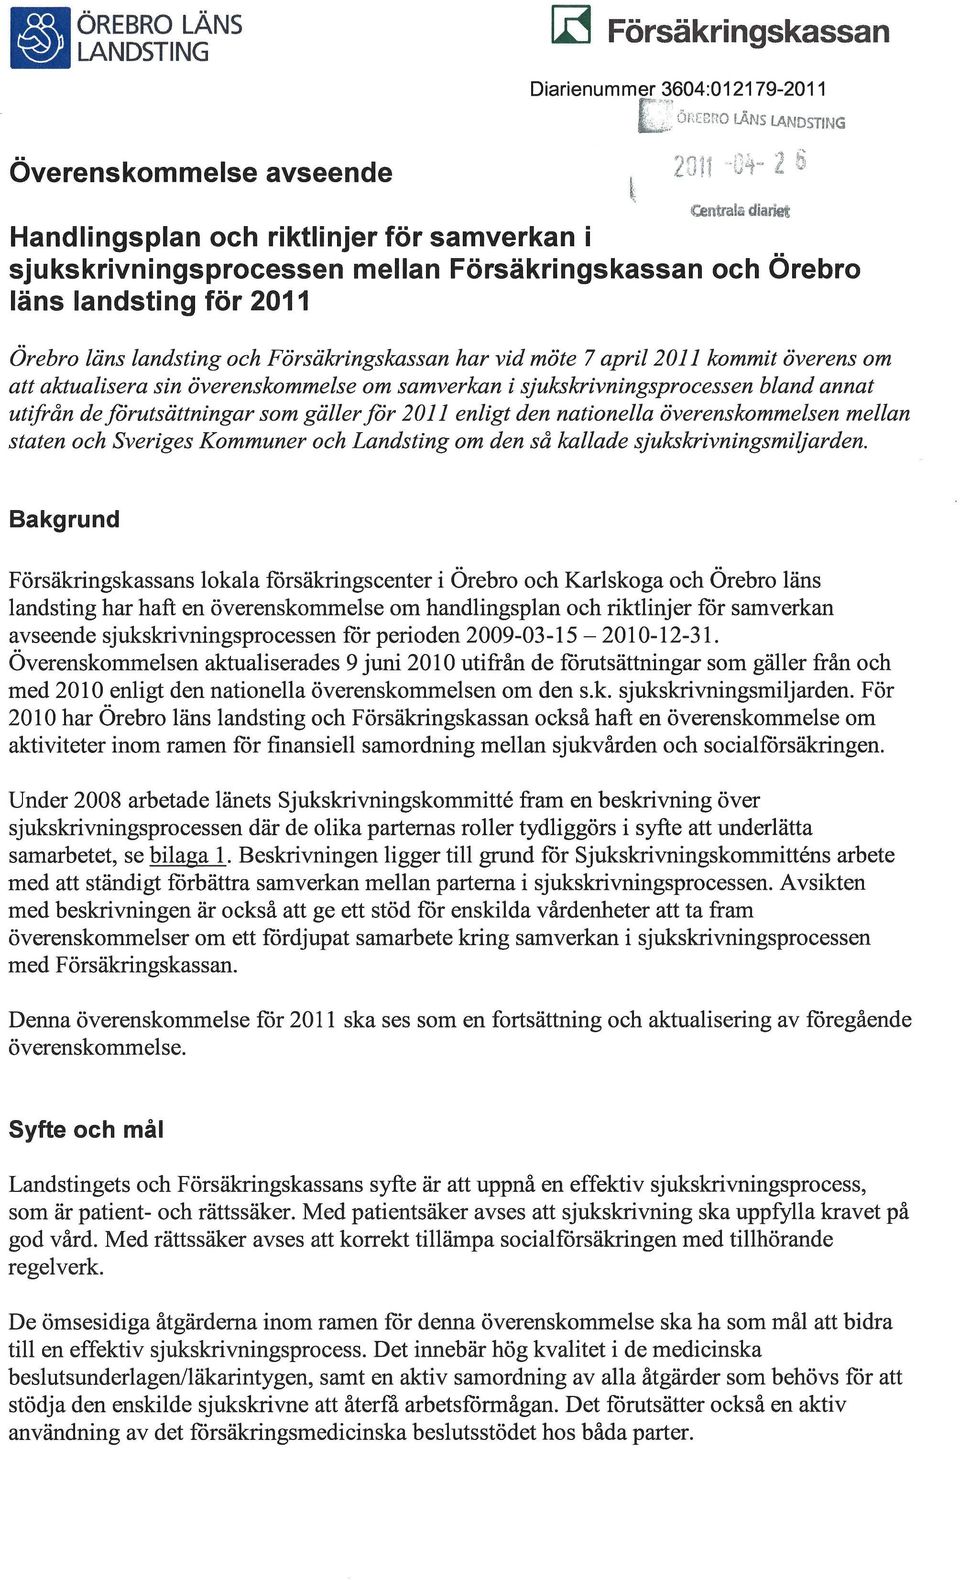 samverkan i sjukskrivningsprocessen bland annat utifrån de förutsättningar som gäller för 2011 enligt den nationella överenskommelsen mellan staten och Sveriges Kommuner och Landsting om den så